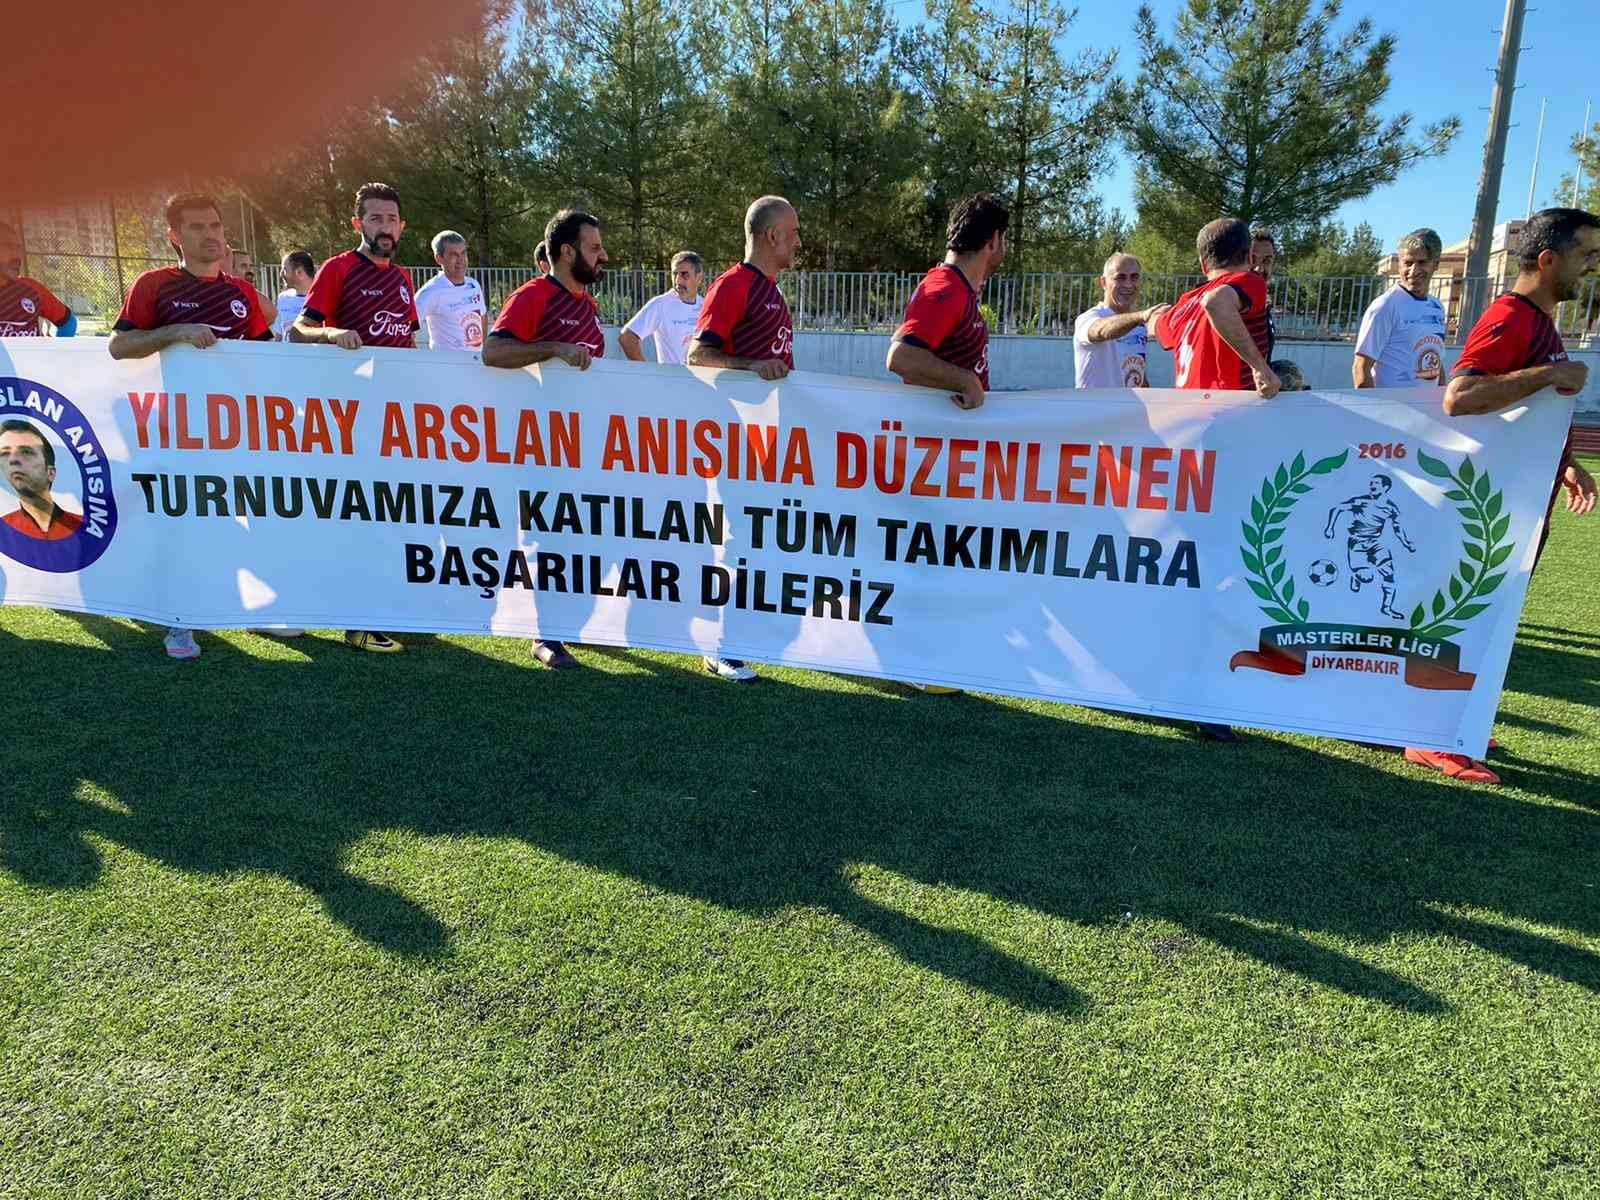 Dr. Yıldıray Arslan turnuvası sona erdi #diyarbakir